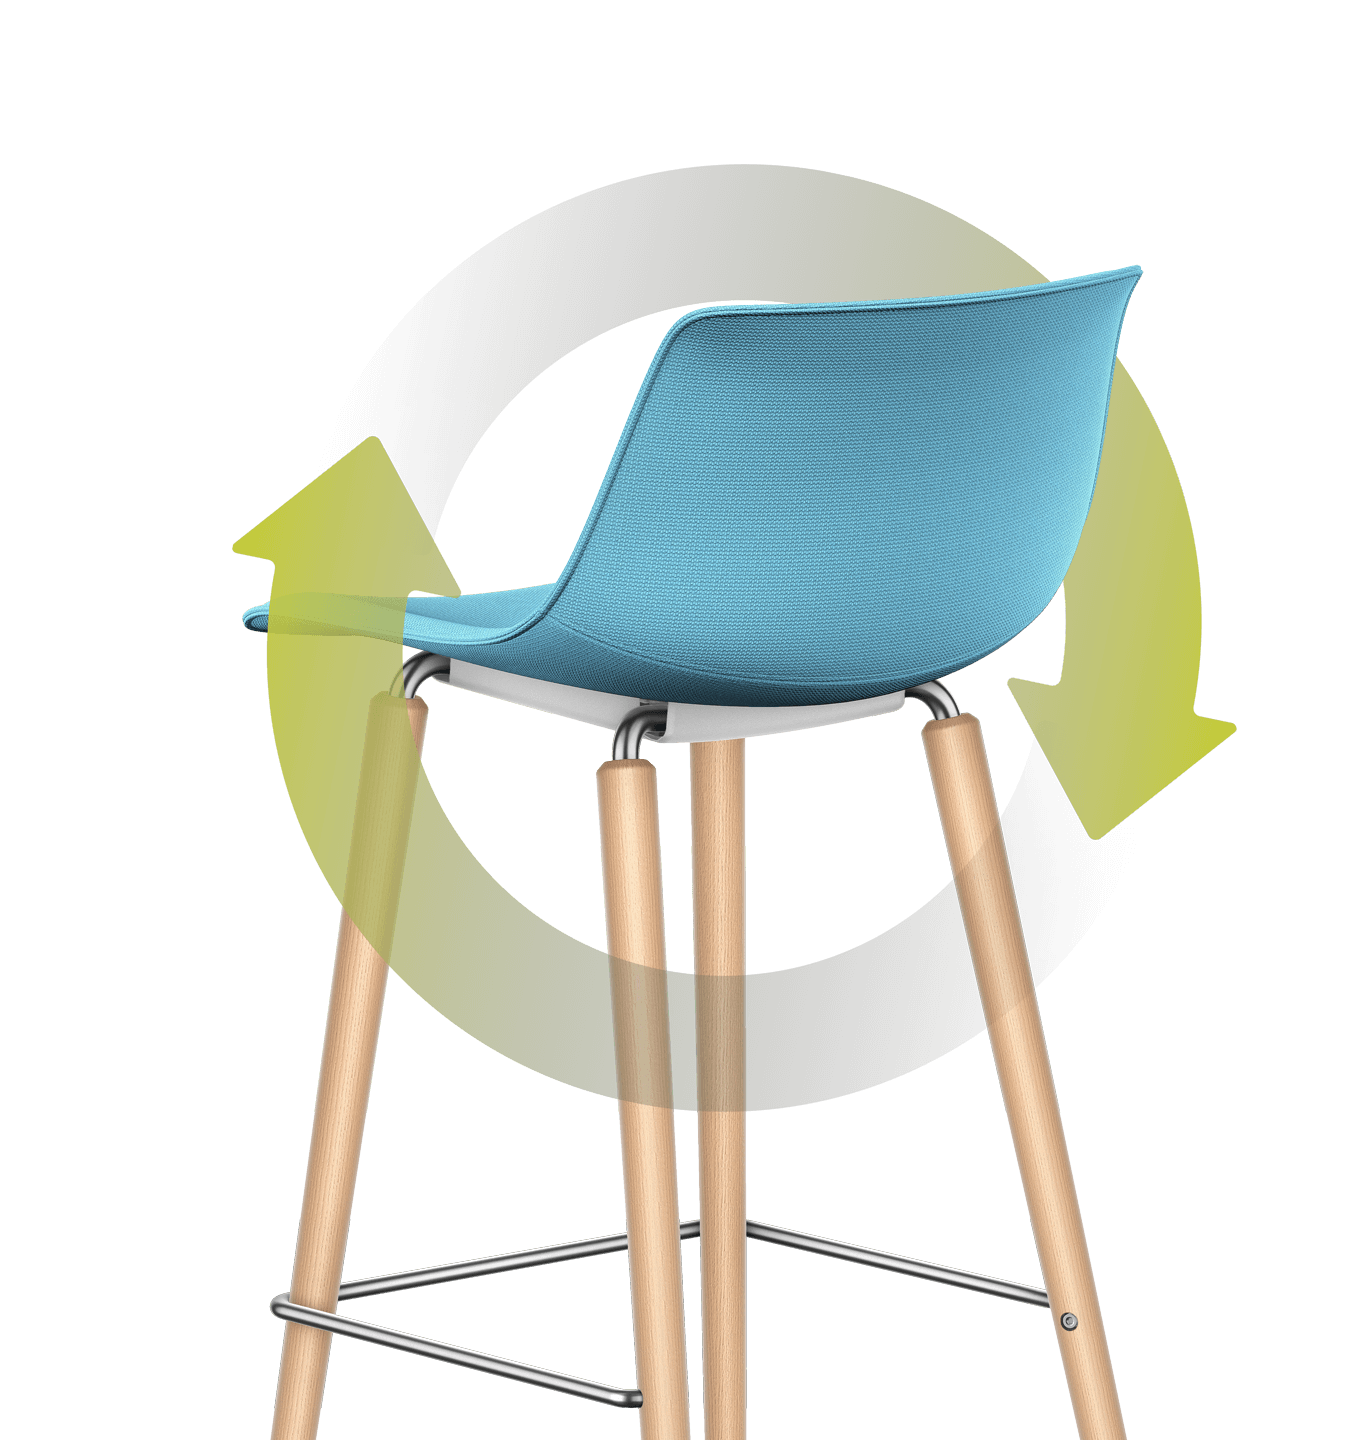 Dicha hoja dibujada se entrelaza en torno a la silla de bar con tapizado azul en el asiento y el respaldo y con estructura de madera de cuatro patas. El tallo rodea la silla, mientras que la hoja se apoya sobre la parte posterior del respaldo.